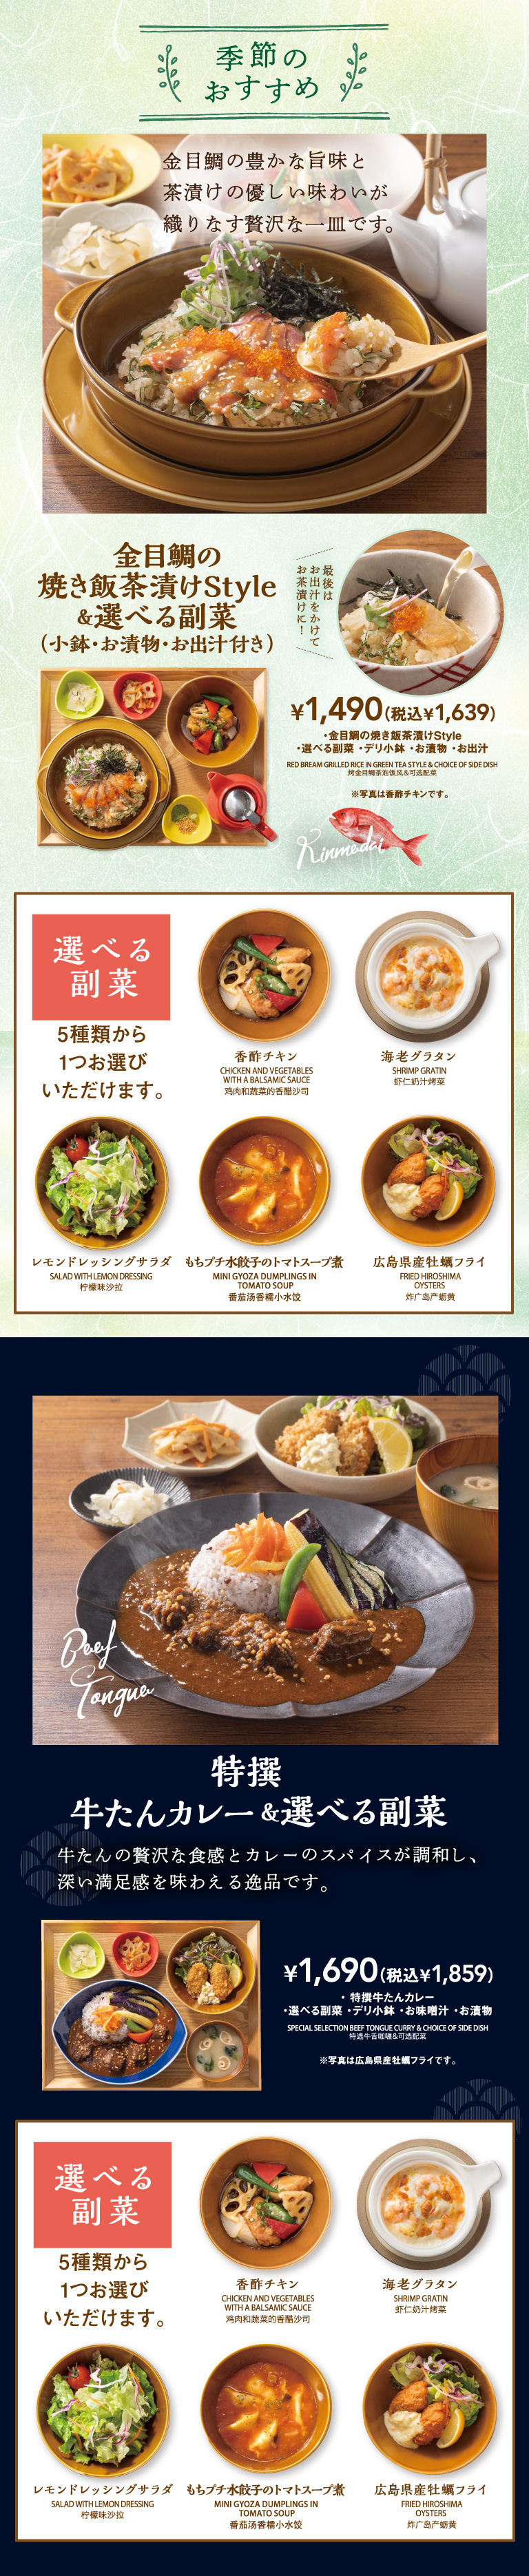 ข้าวผัดปลาไทสีทอง ข้าวผัดและเครื่องเคียงที่คุณเลือก สุดท้ายเติมซุปดาชิแล้วทำโอชาสึเกะ